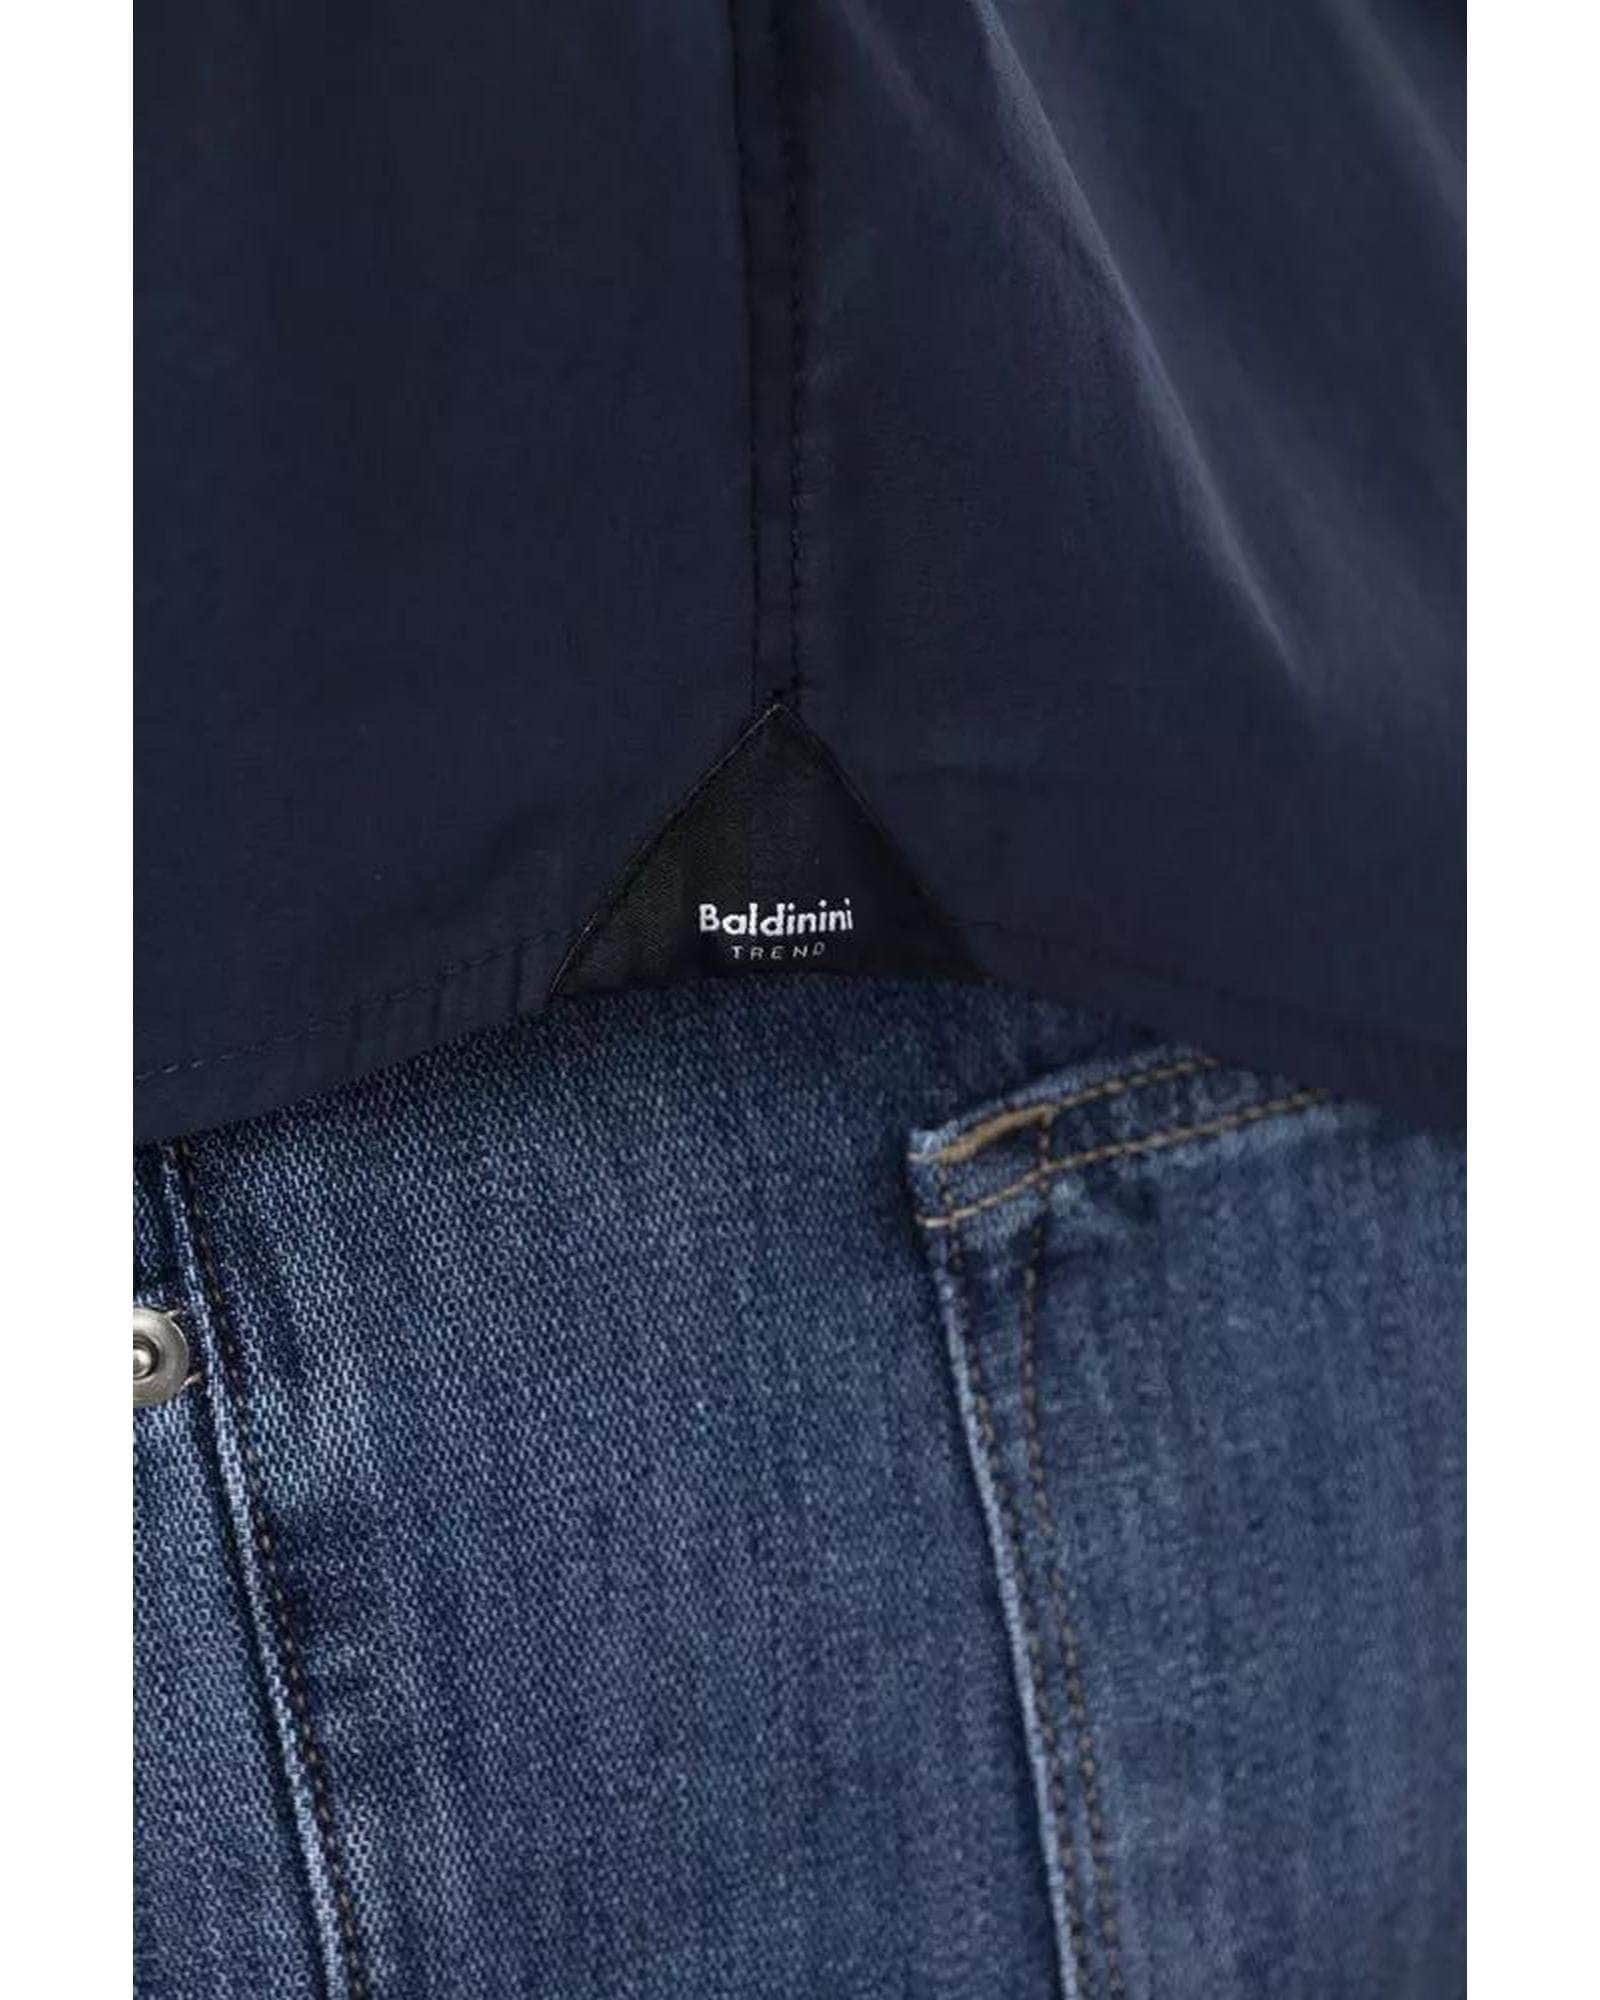 Sleek Men's Black/Bordeaux/Blue Cotton Shirt